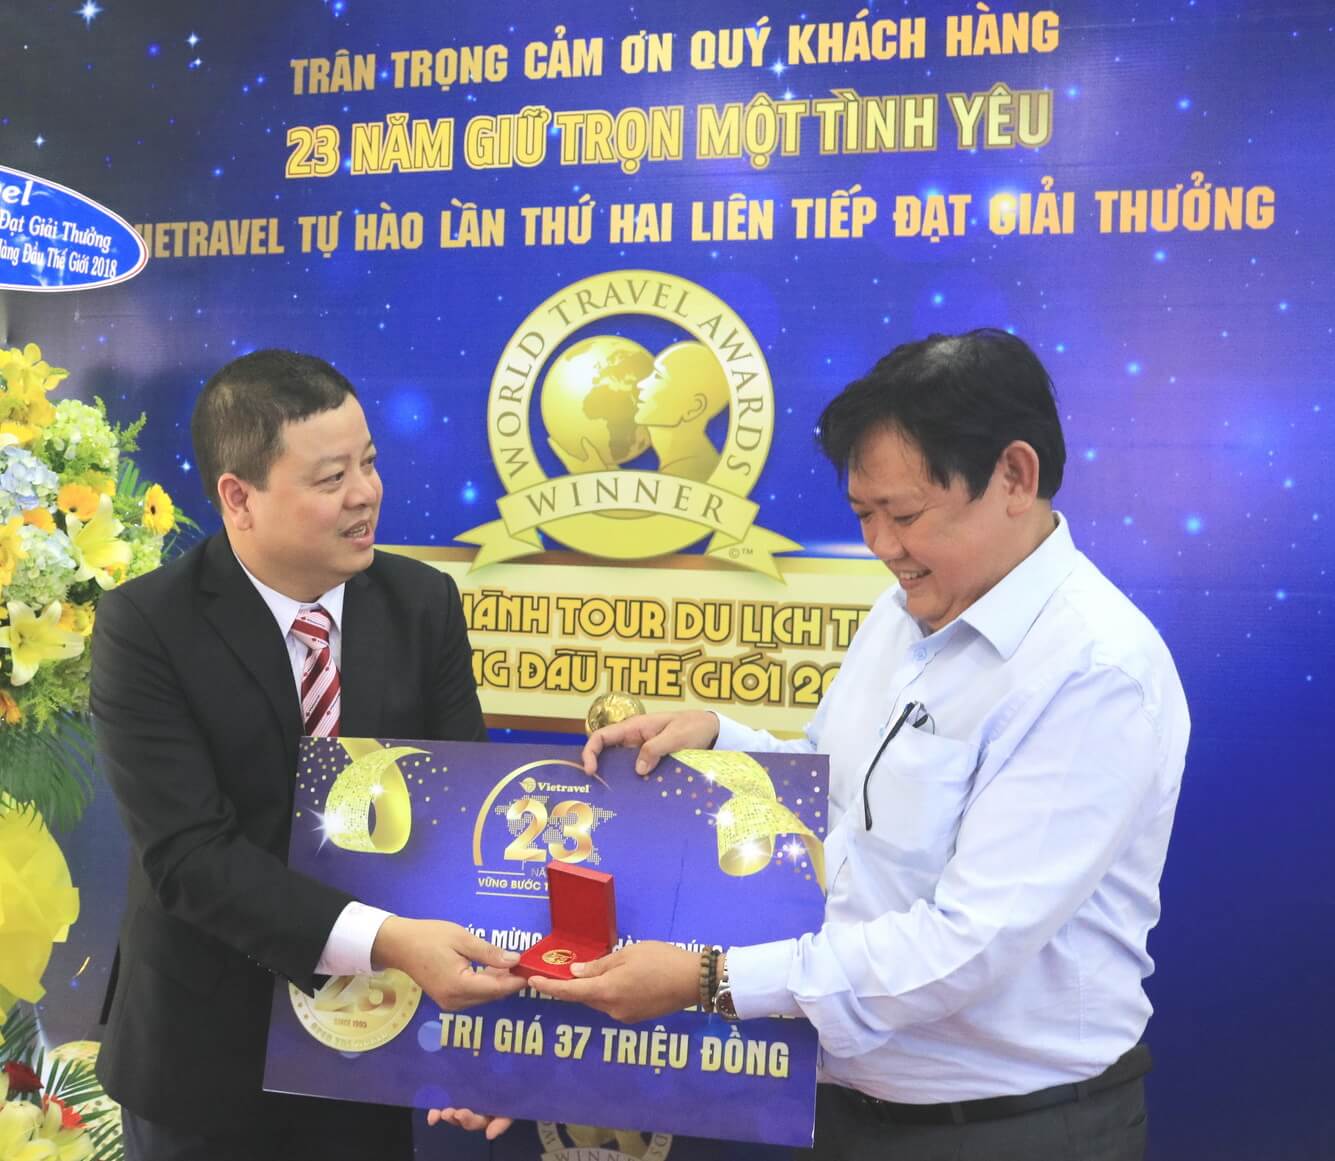 Chúc mừng 23 khách hàng trúng thưởng đồng tiền vàng Vietravel